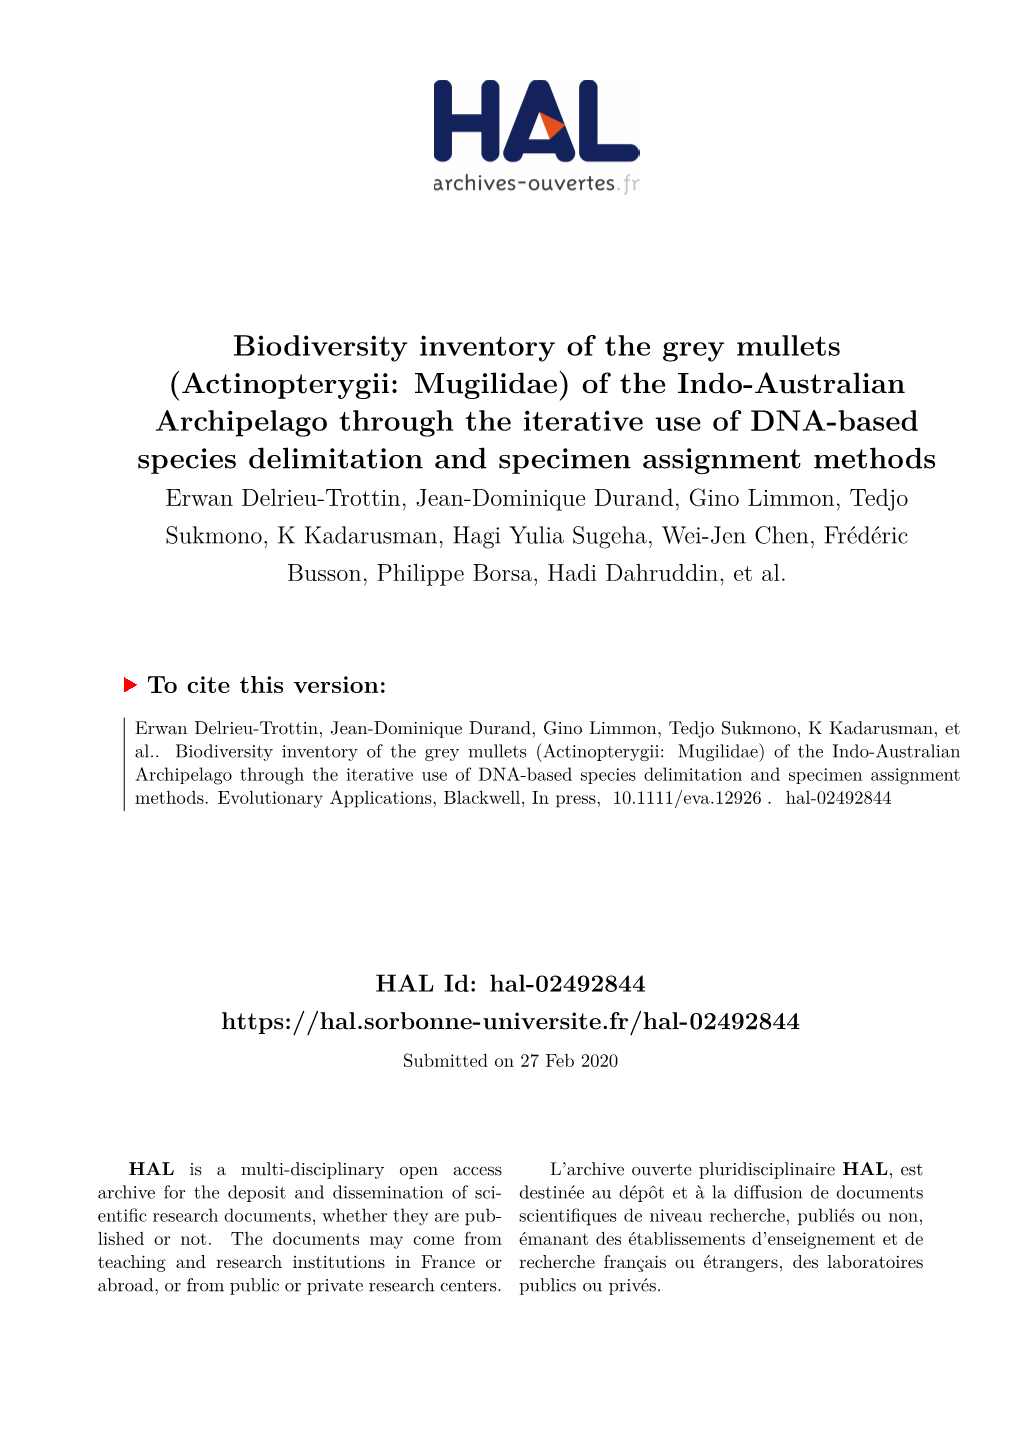 Biodiversity Inventory of the Grey Mullets (Actinopterygii: Mugilidae)